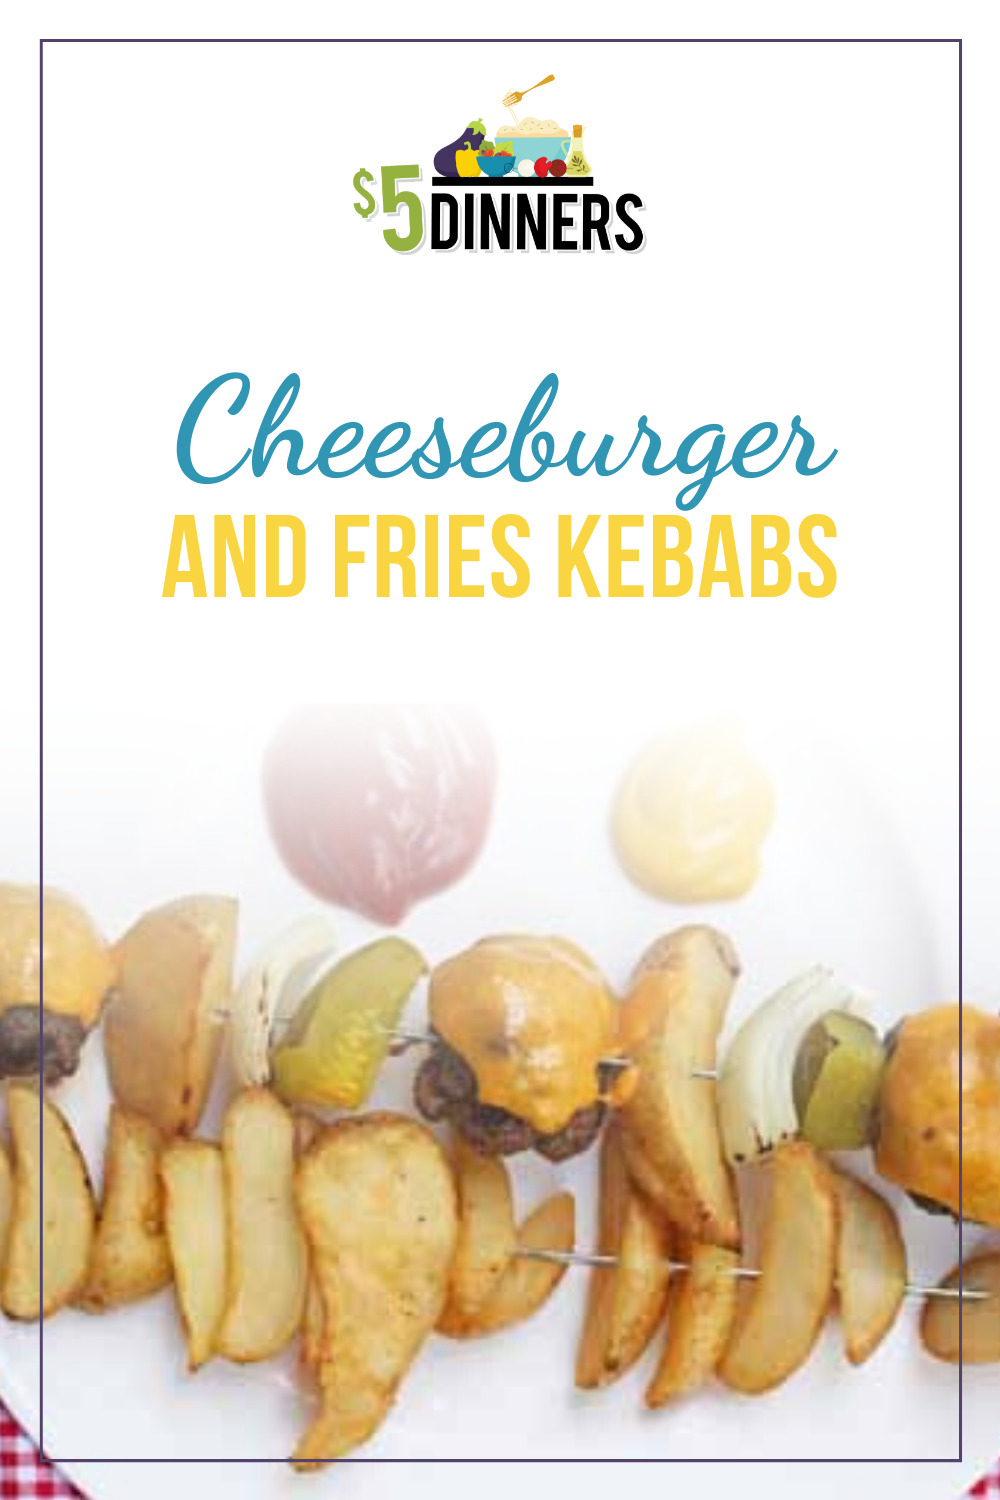 cheeseburger and fries kebabs